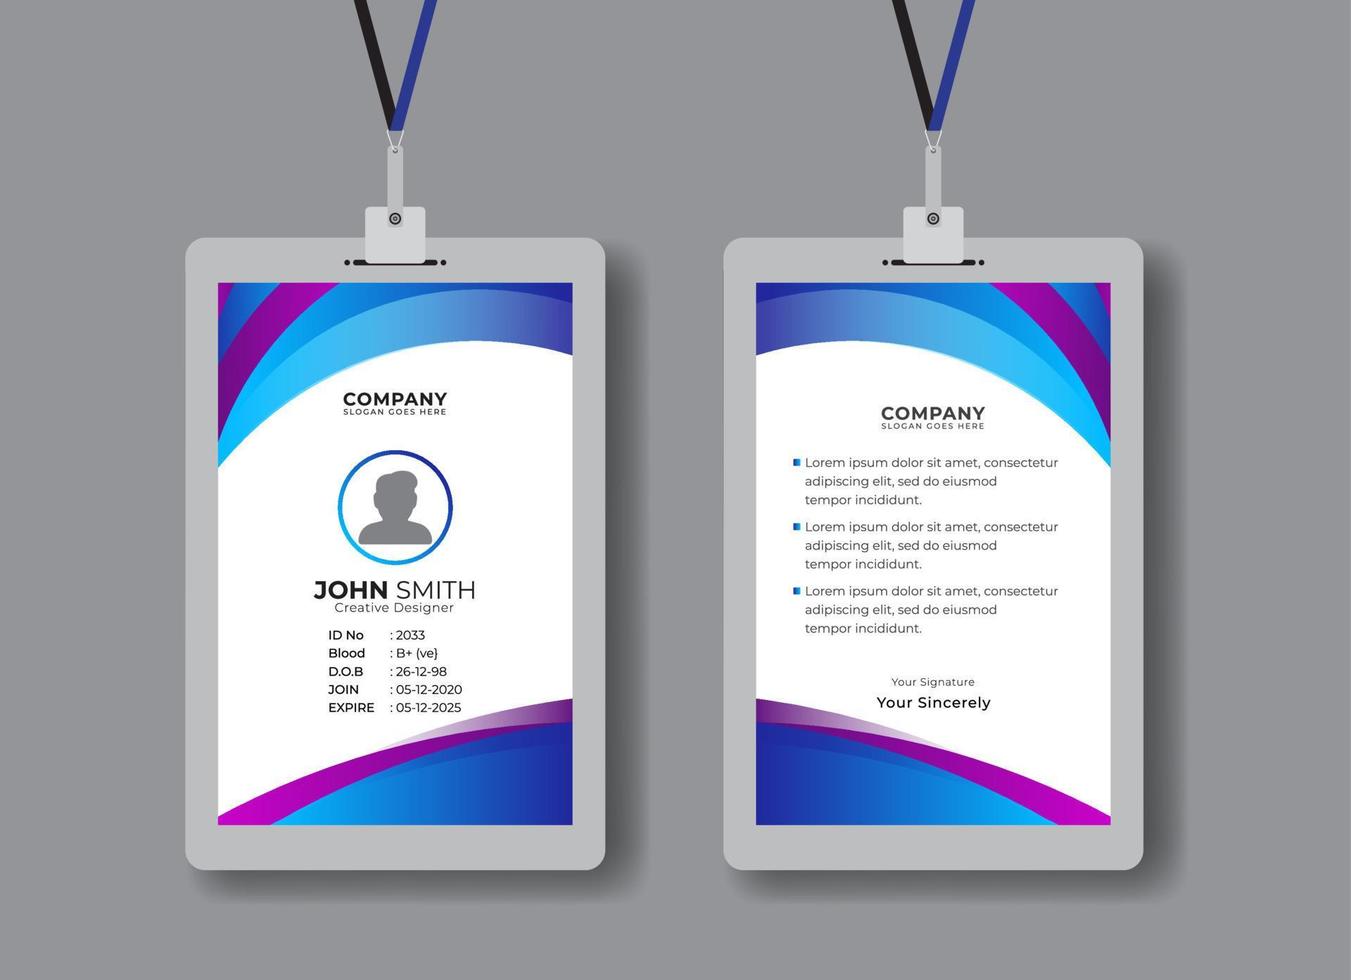 diseño de tarjeta de identificación de personal de oficina moderno y creativo para descarga profesional de empleados vector